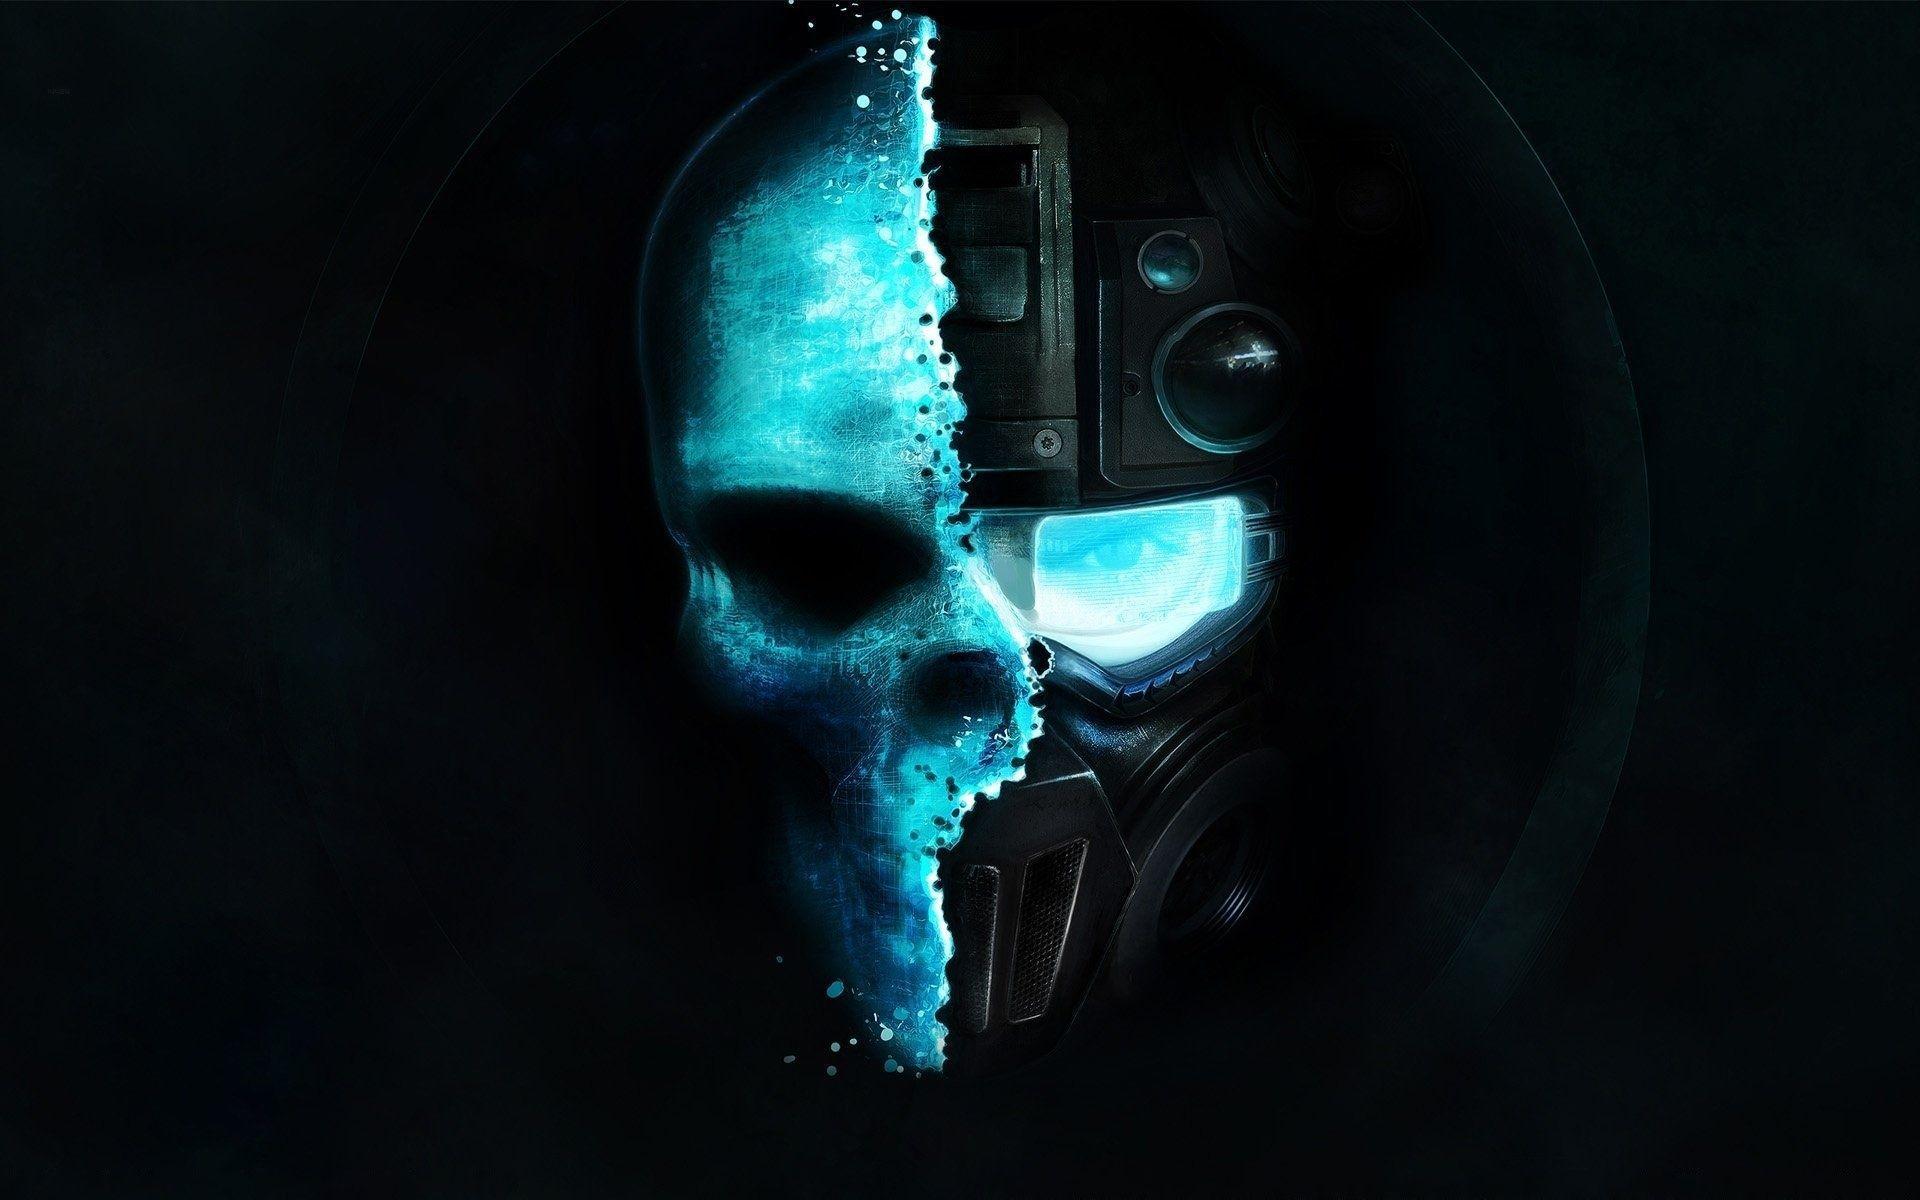 Ghost Recon Future Soldier dark horror skulls face sci fi science futuristic wallpaper background. Skull wallpaper, Tom clancy ghost recon, Future soldier